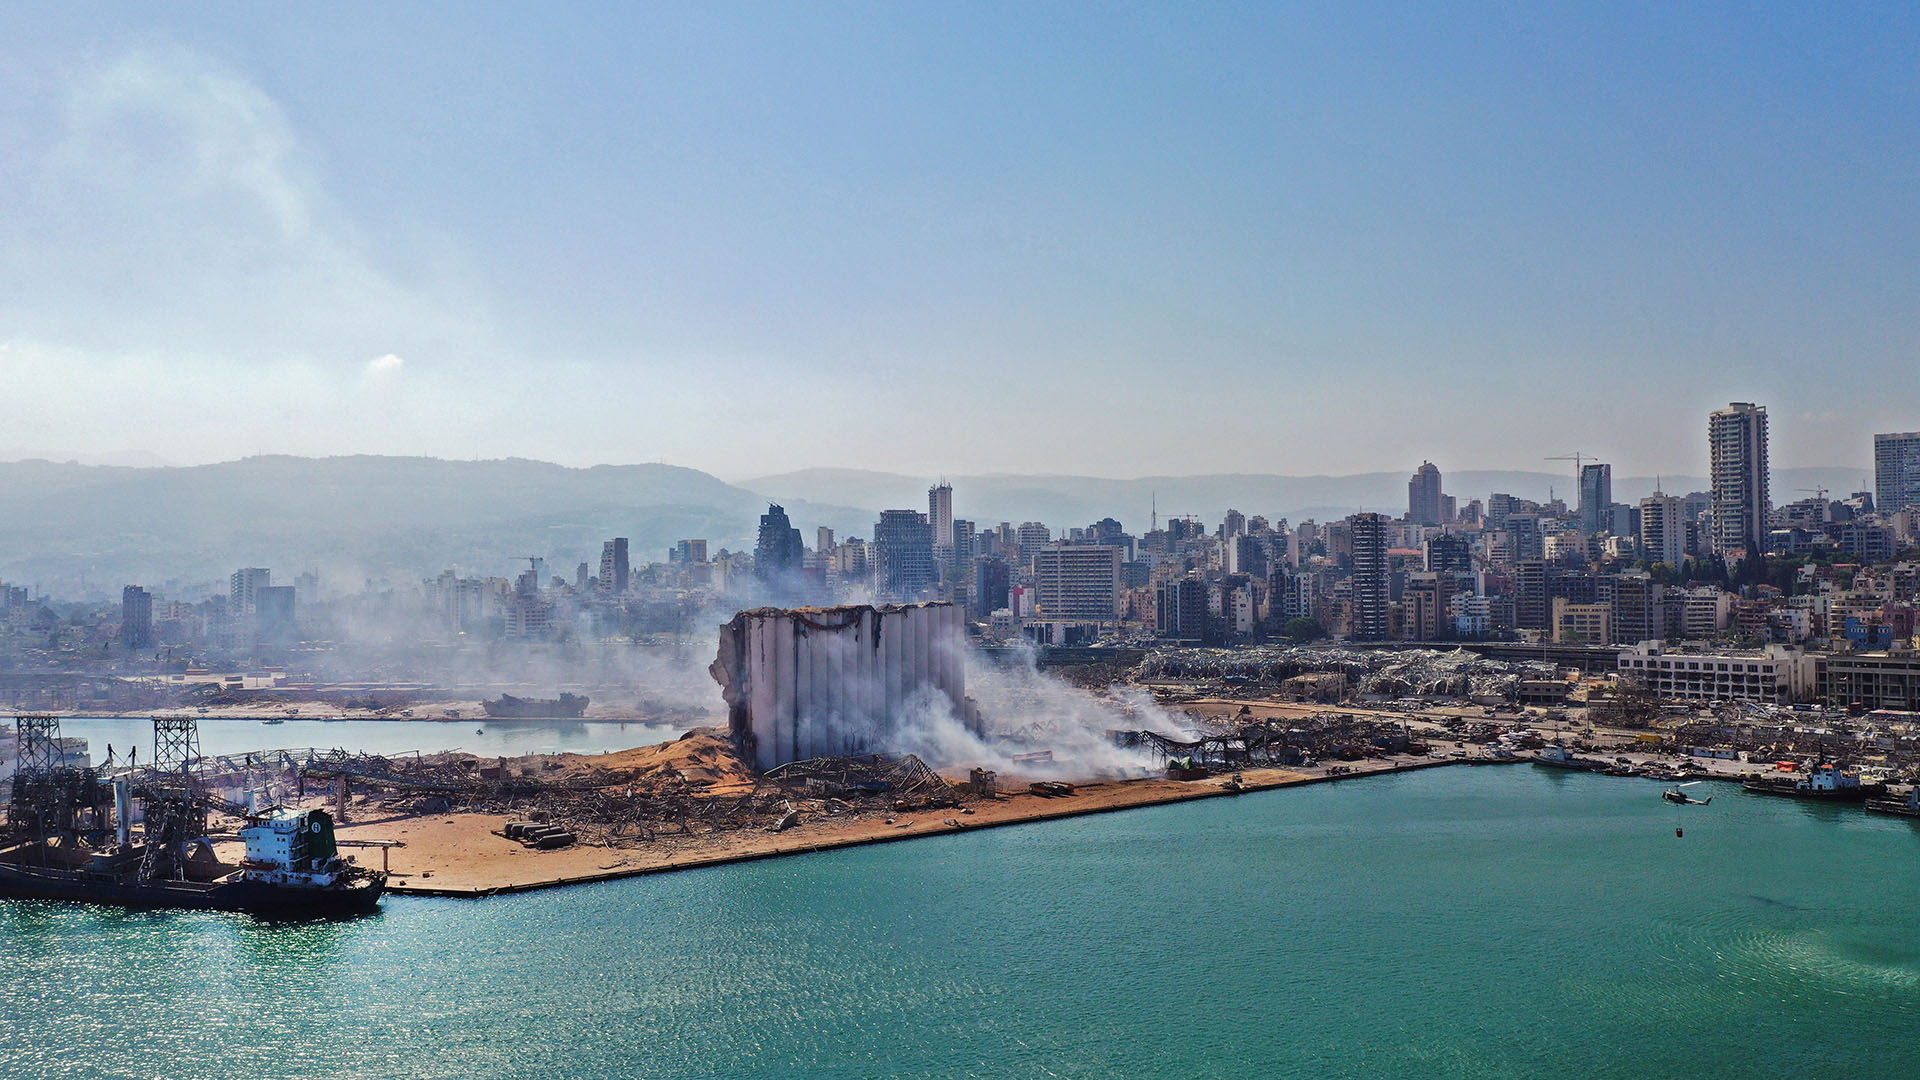 Transfieren la investigación de la explosión de Beirut al ámbito militar